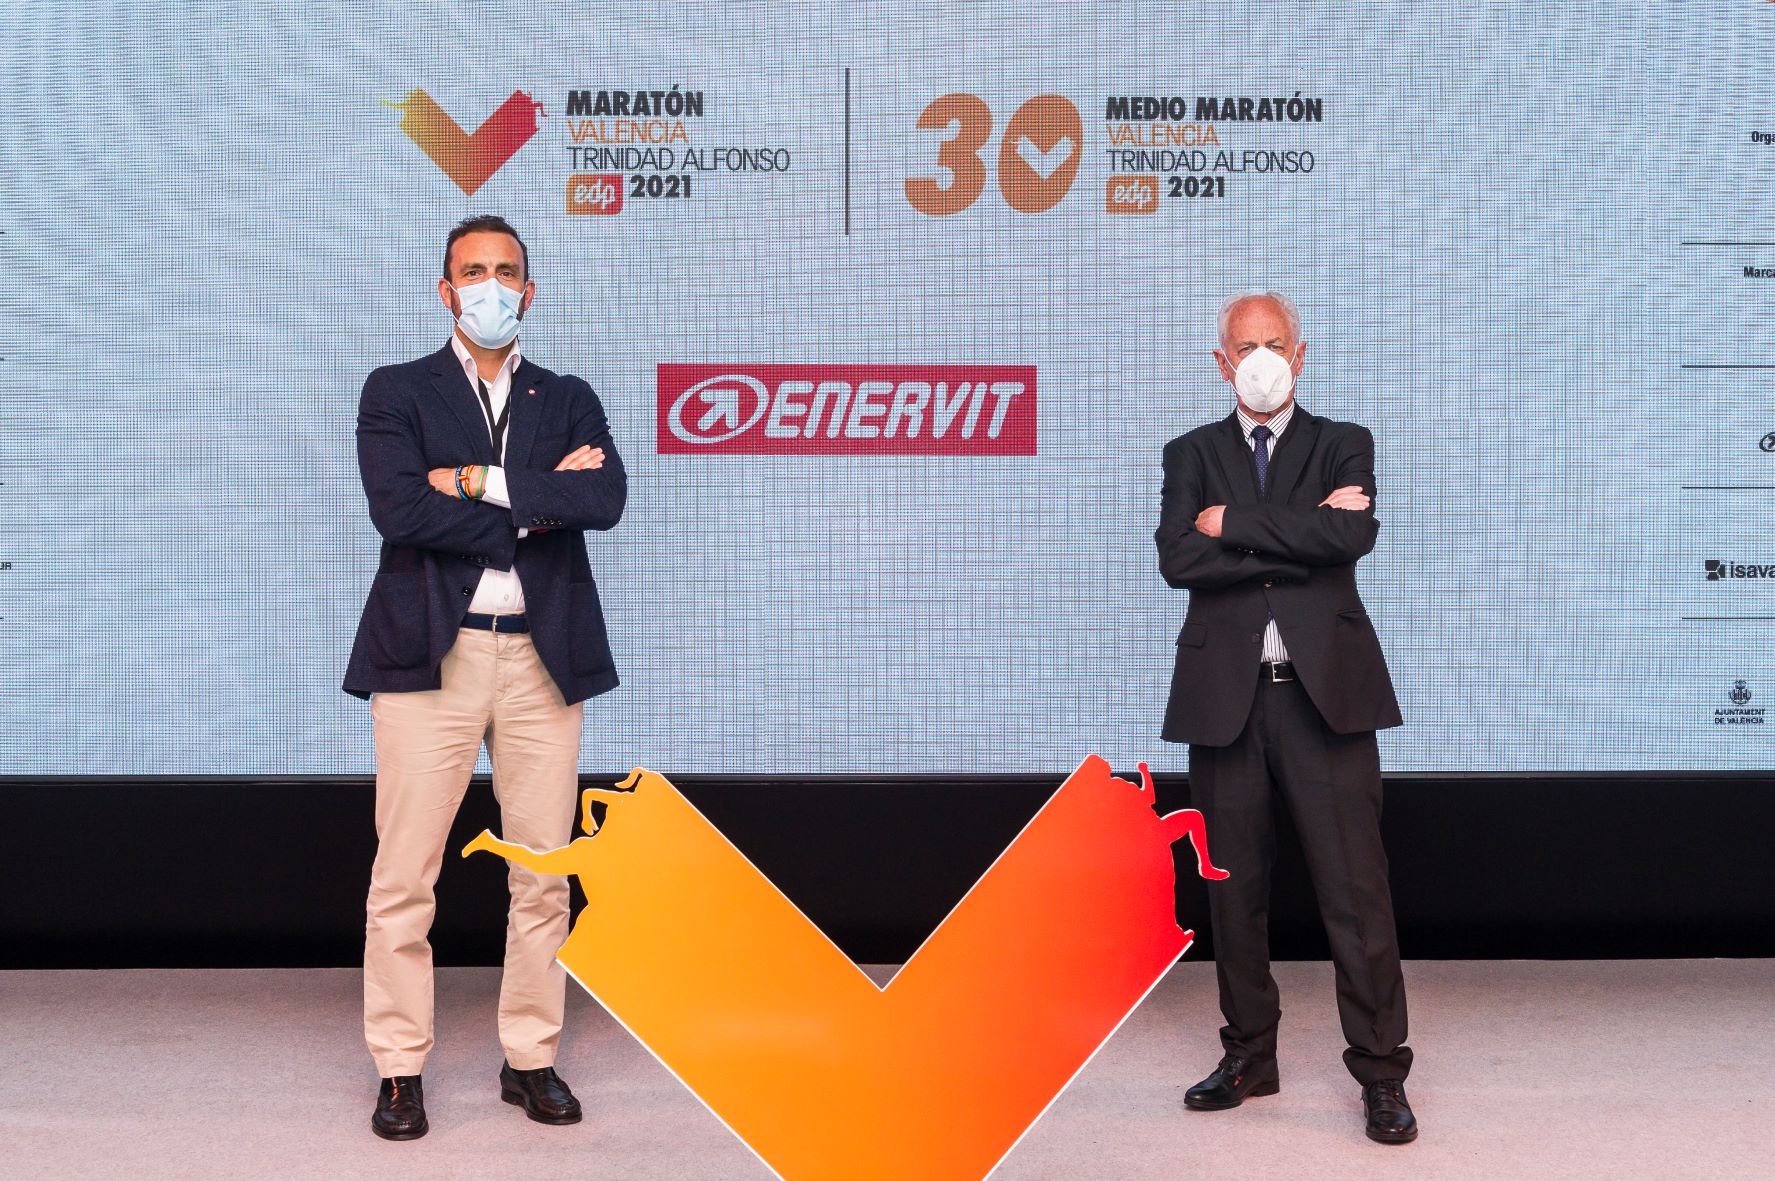 RUNNING  Enervit será el gel energético oficial del Maratón y Medio  Maratón Valencia Trinidad Alfonso - Plaza Deportiva